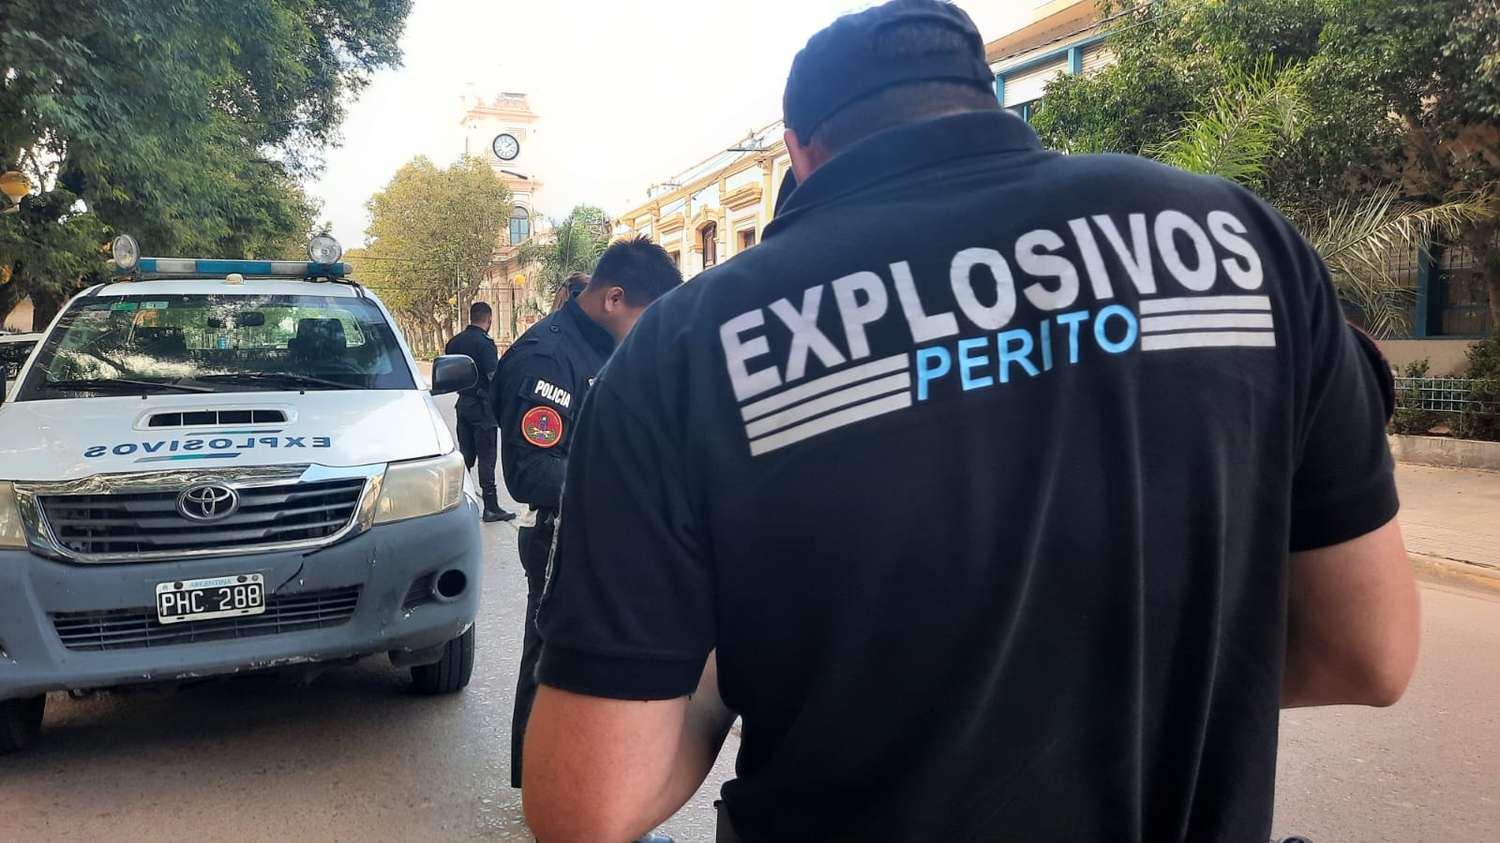 Amenazas de bomba en escuelas: tras más de ocho horas de trabajo, la Brigada Antiexplosivos confirmó que eran falsas